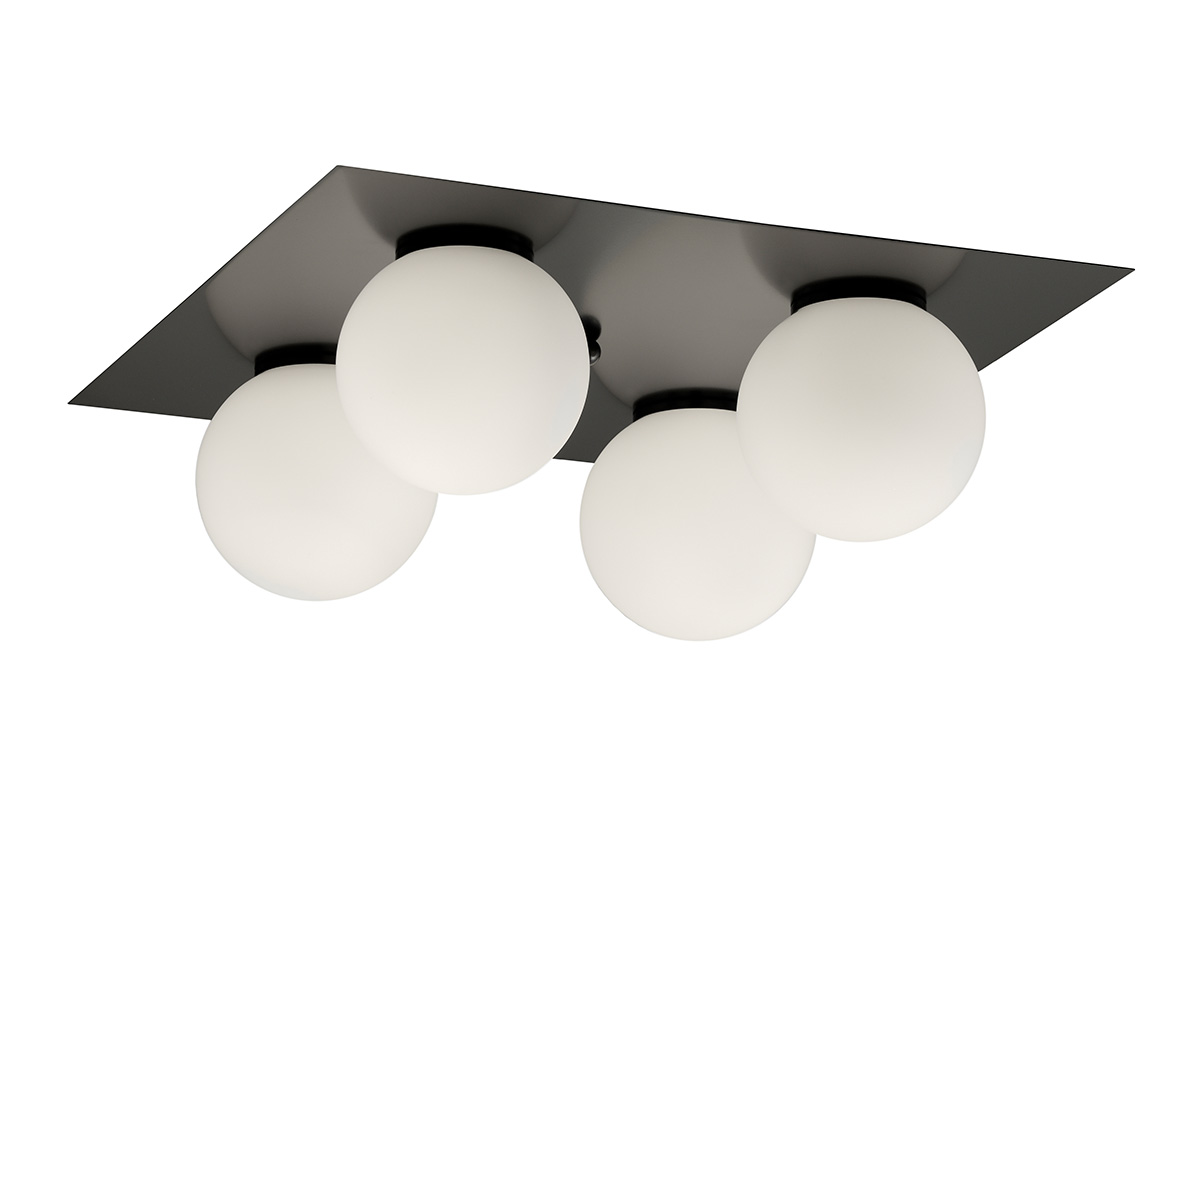 Μοντέρνο φωτιστικό οροφής ΜΠΑΛΕΣ modern ceiling lamp SPHERE